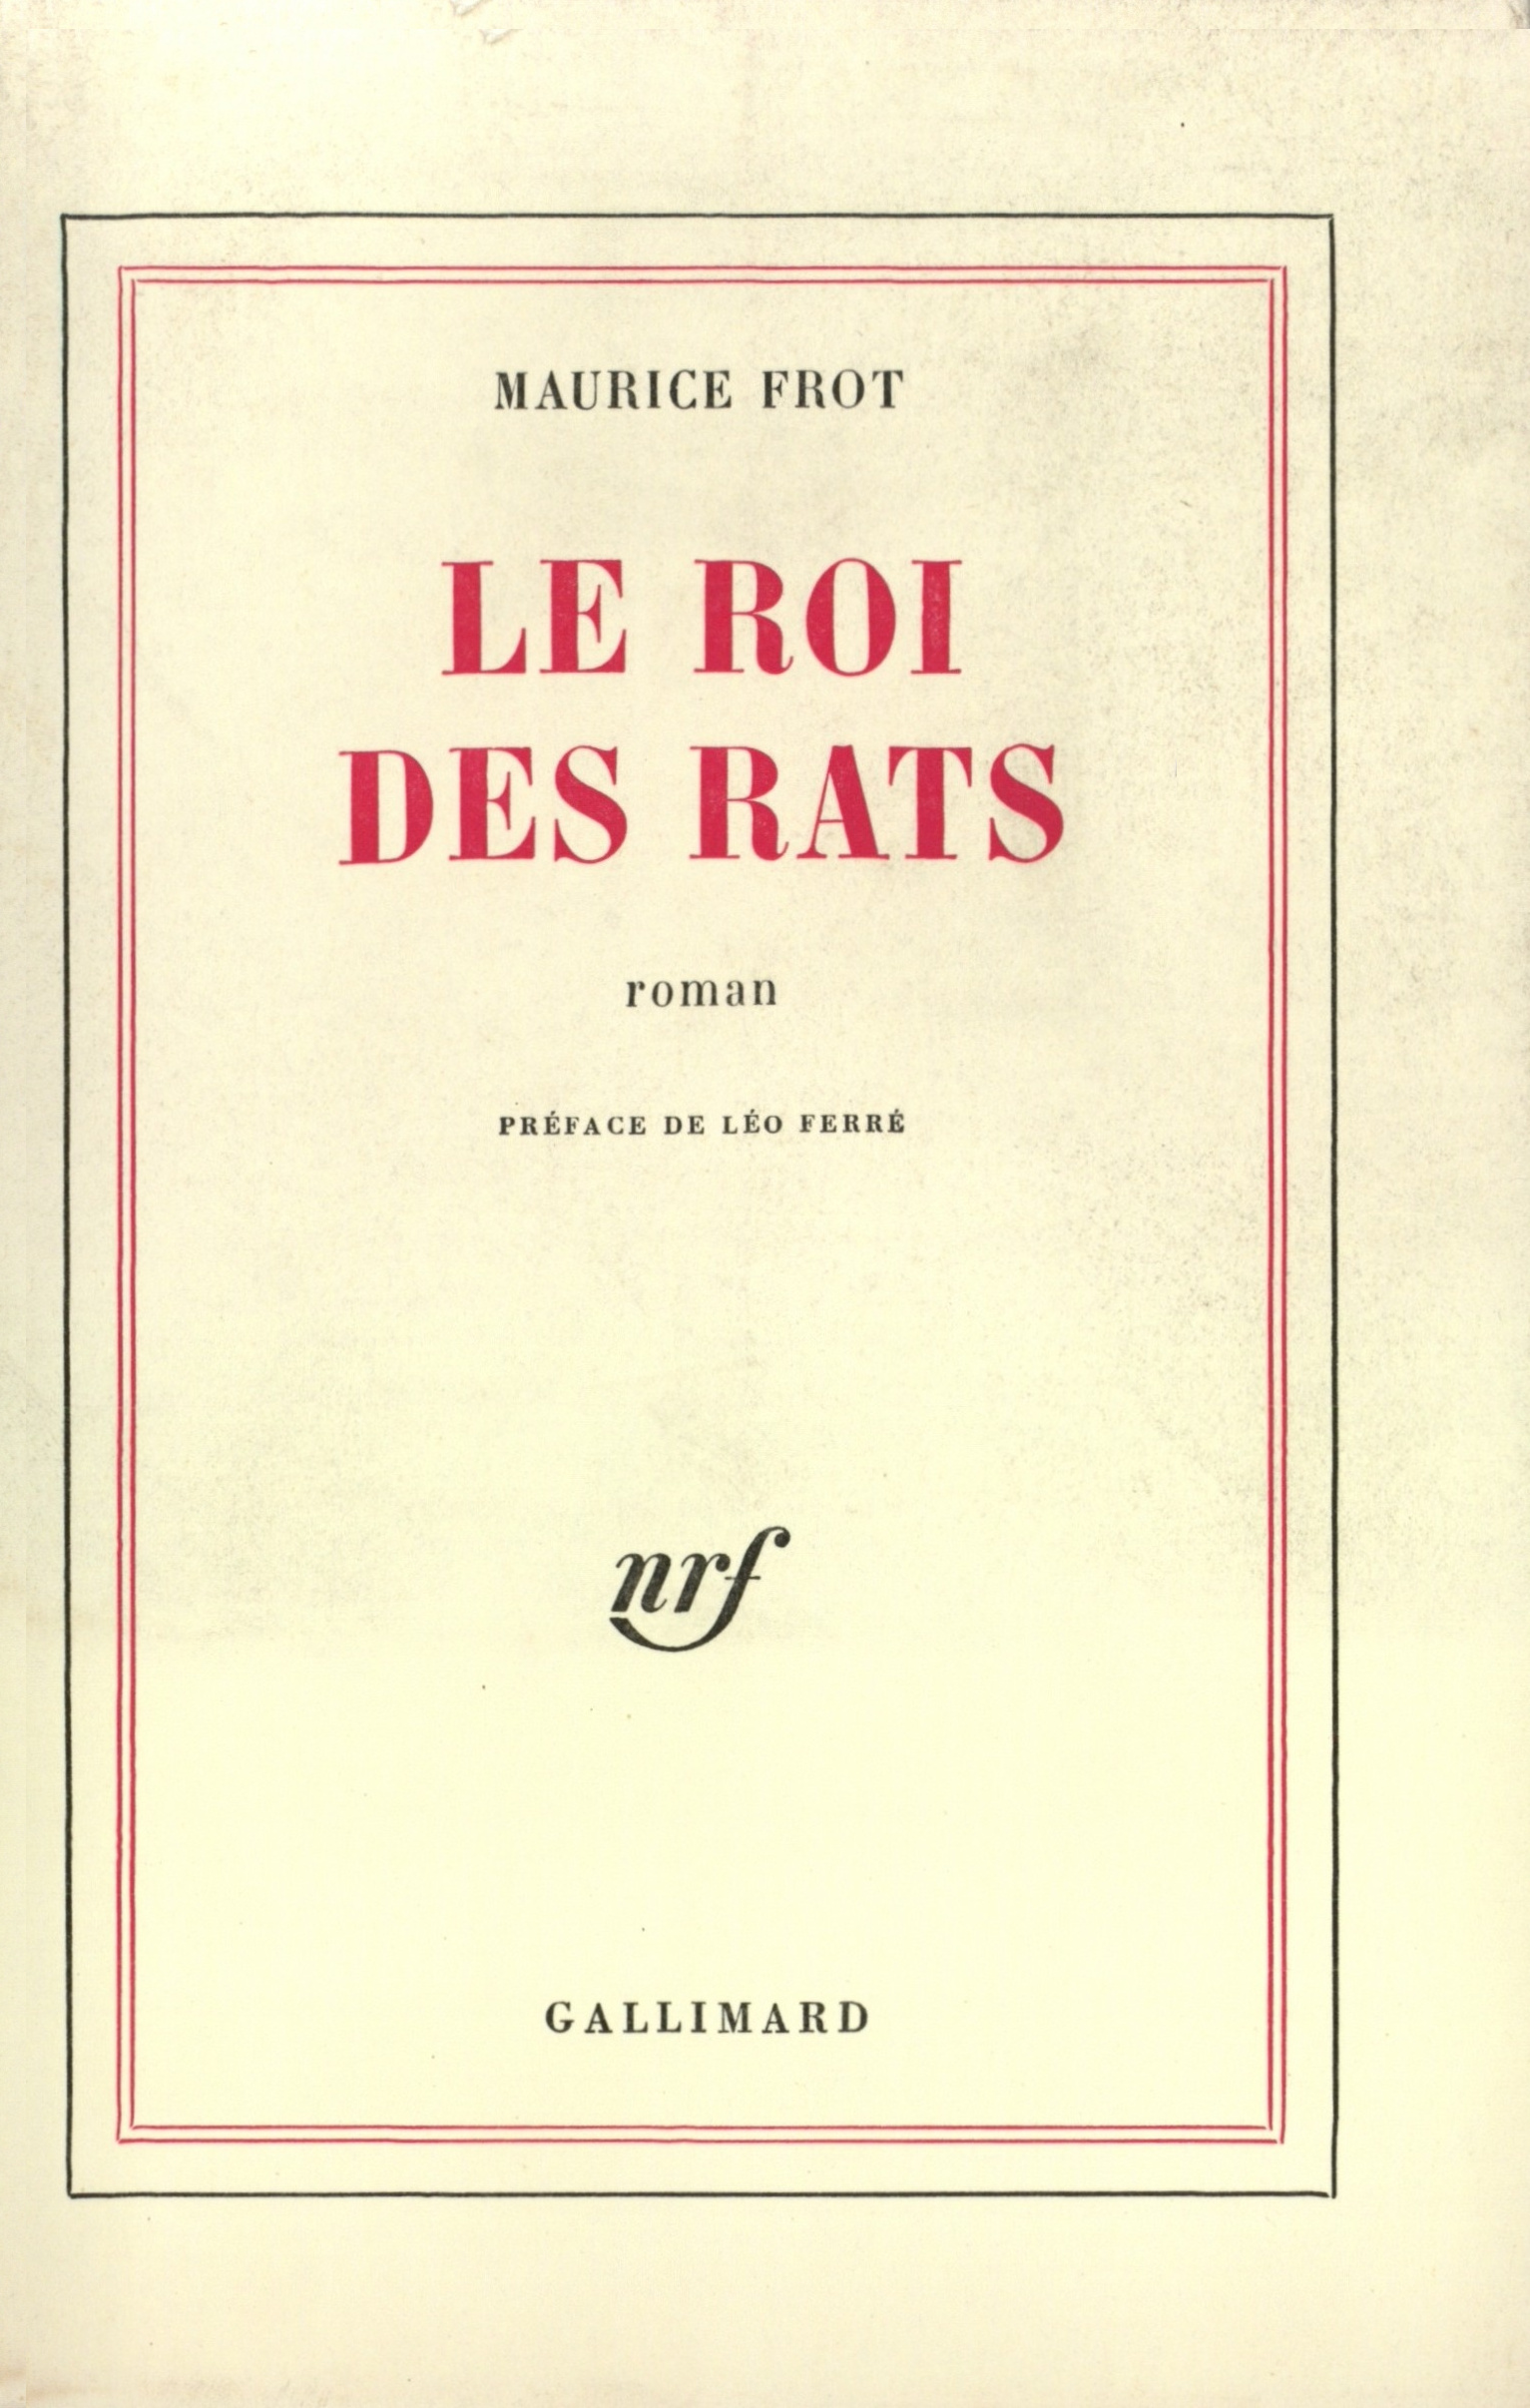 Léo Ferré rédige la préface du livre Le Roi des rats de Maurice Frot